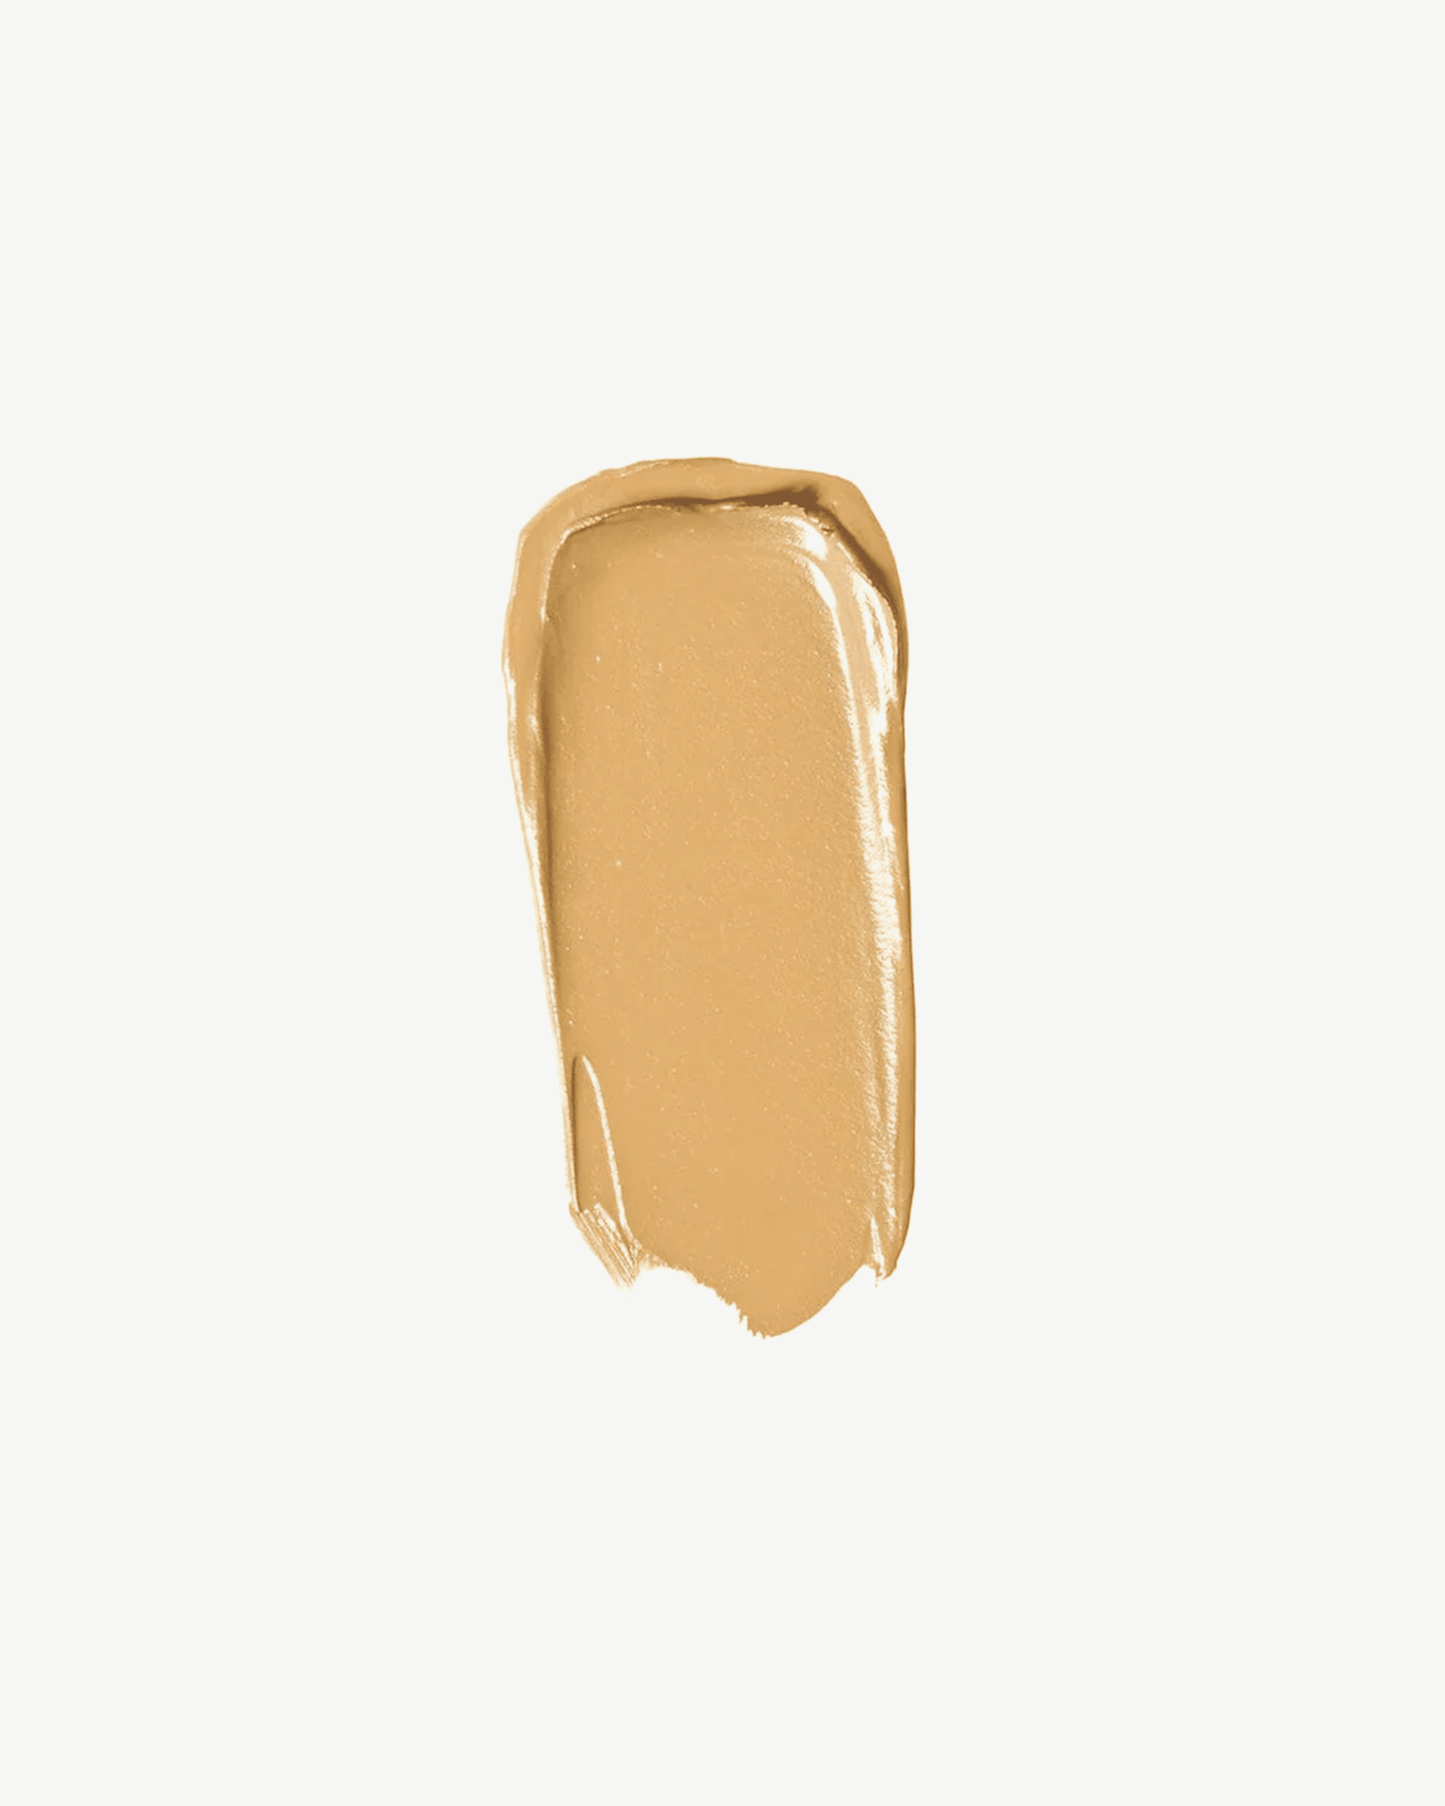 Gold 70 (medium-light brown with golden undertones)